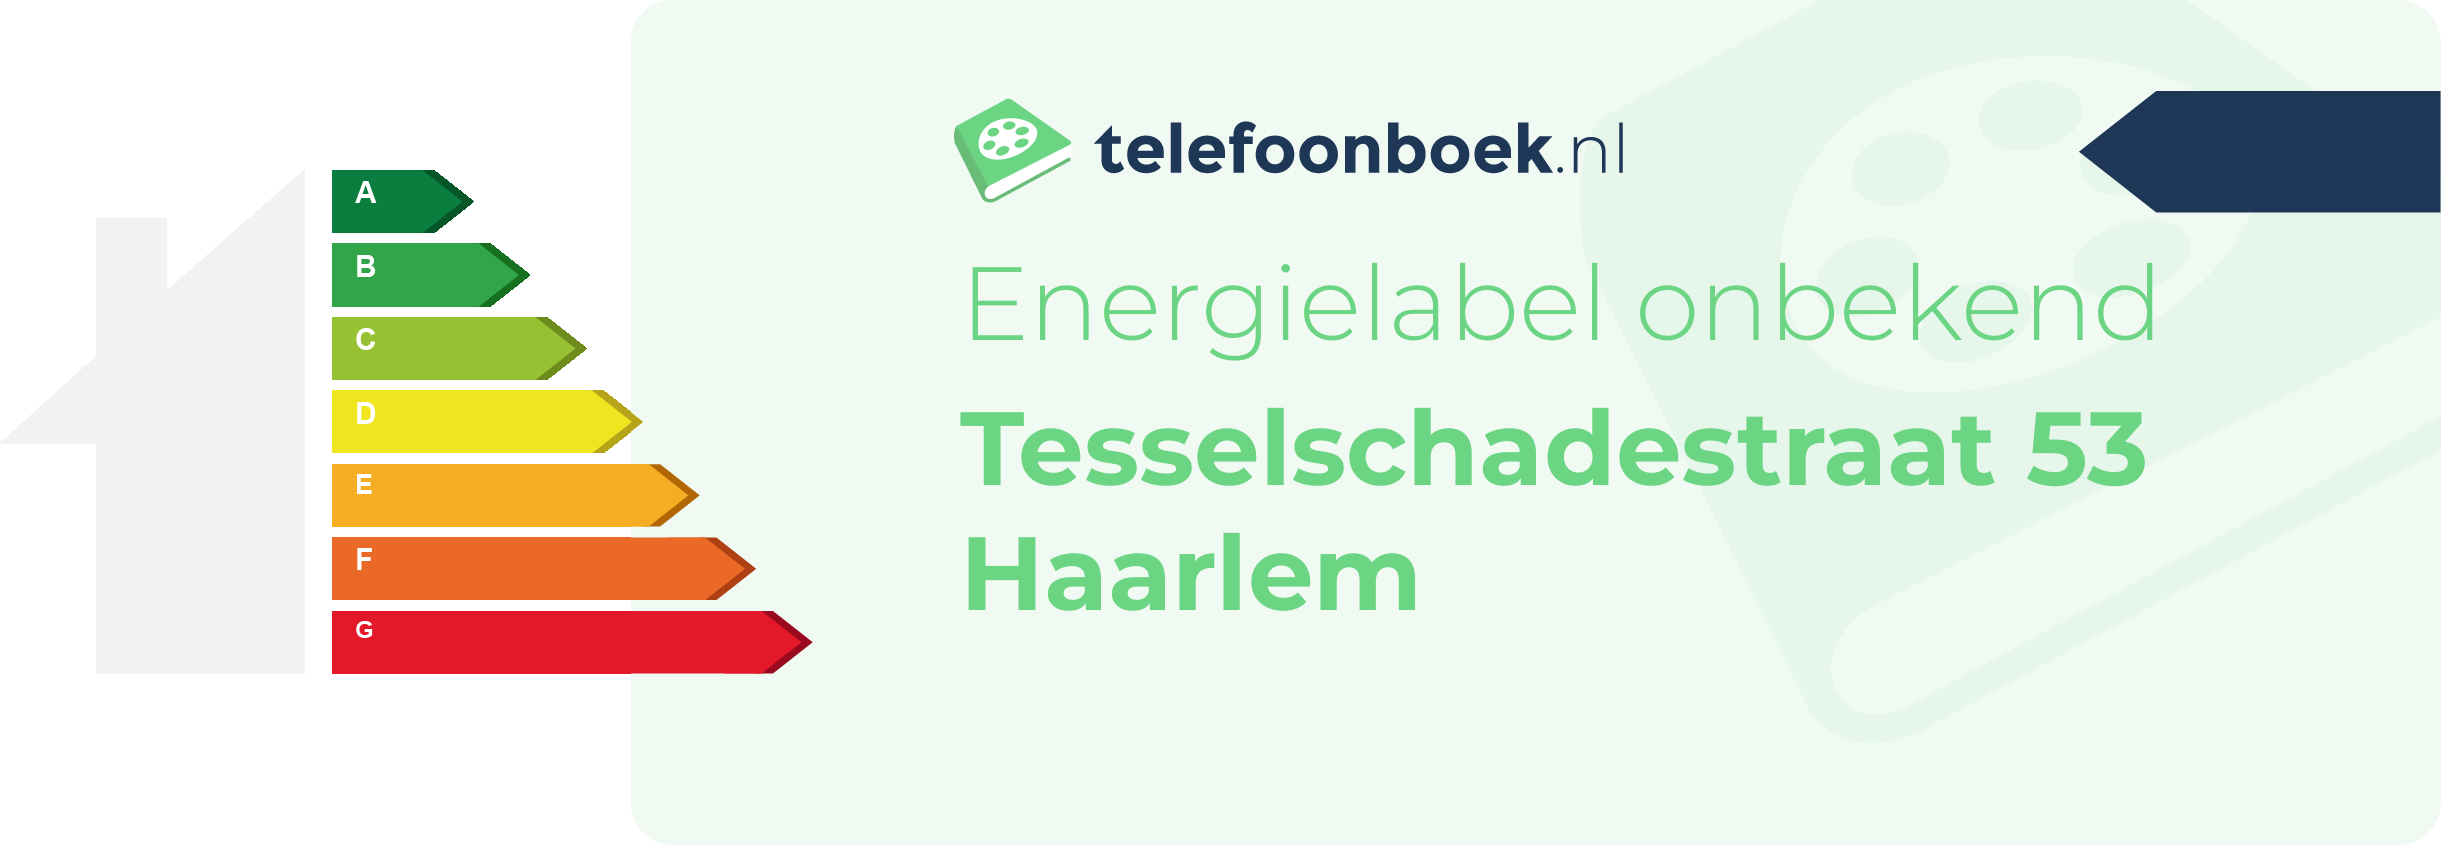 Energielabel Tesselschadestraat 53 Haarlem